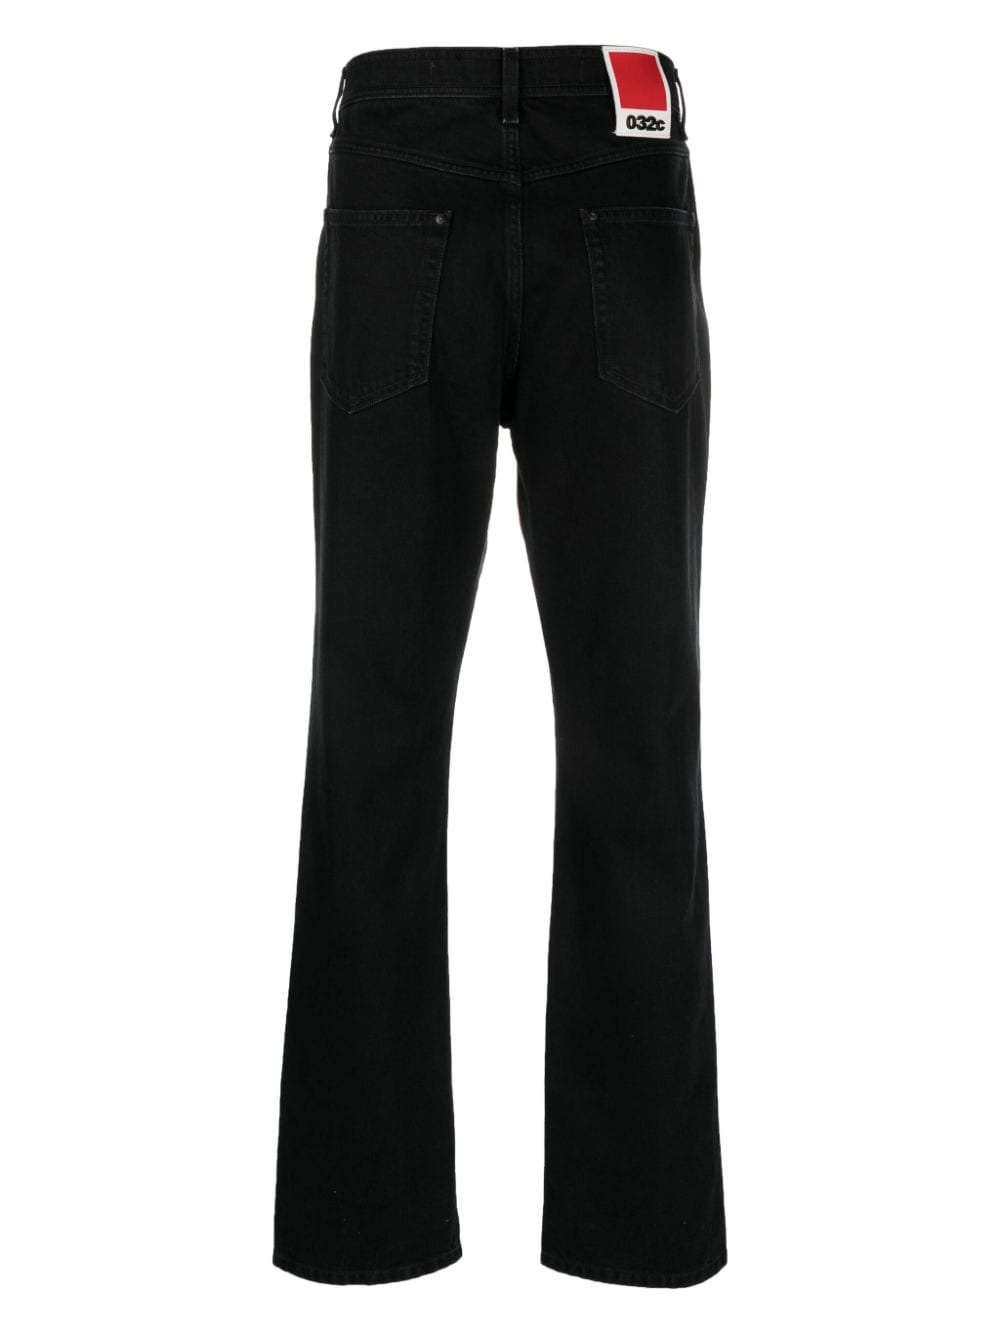 032C 032C- Denim Jeans